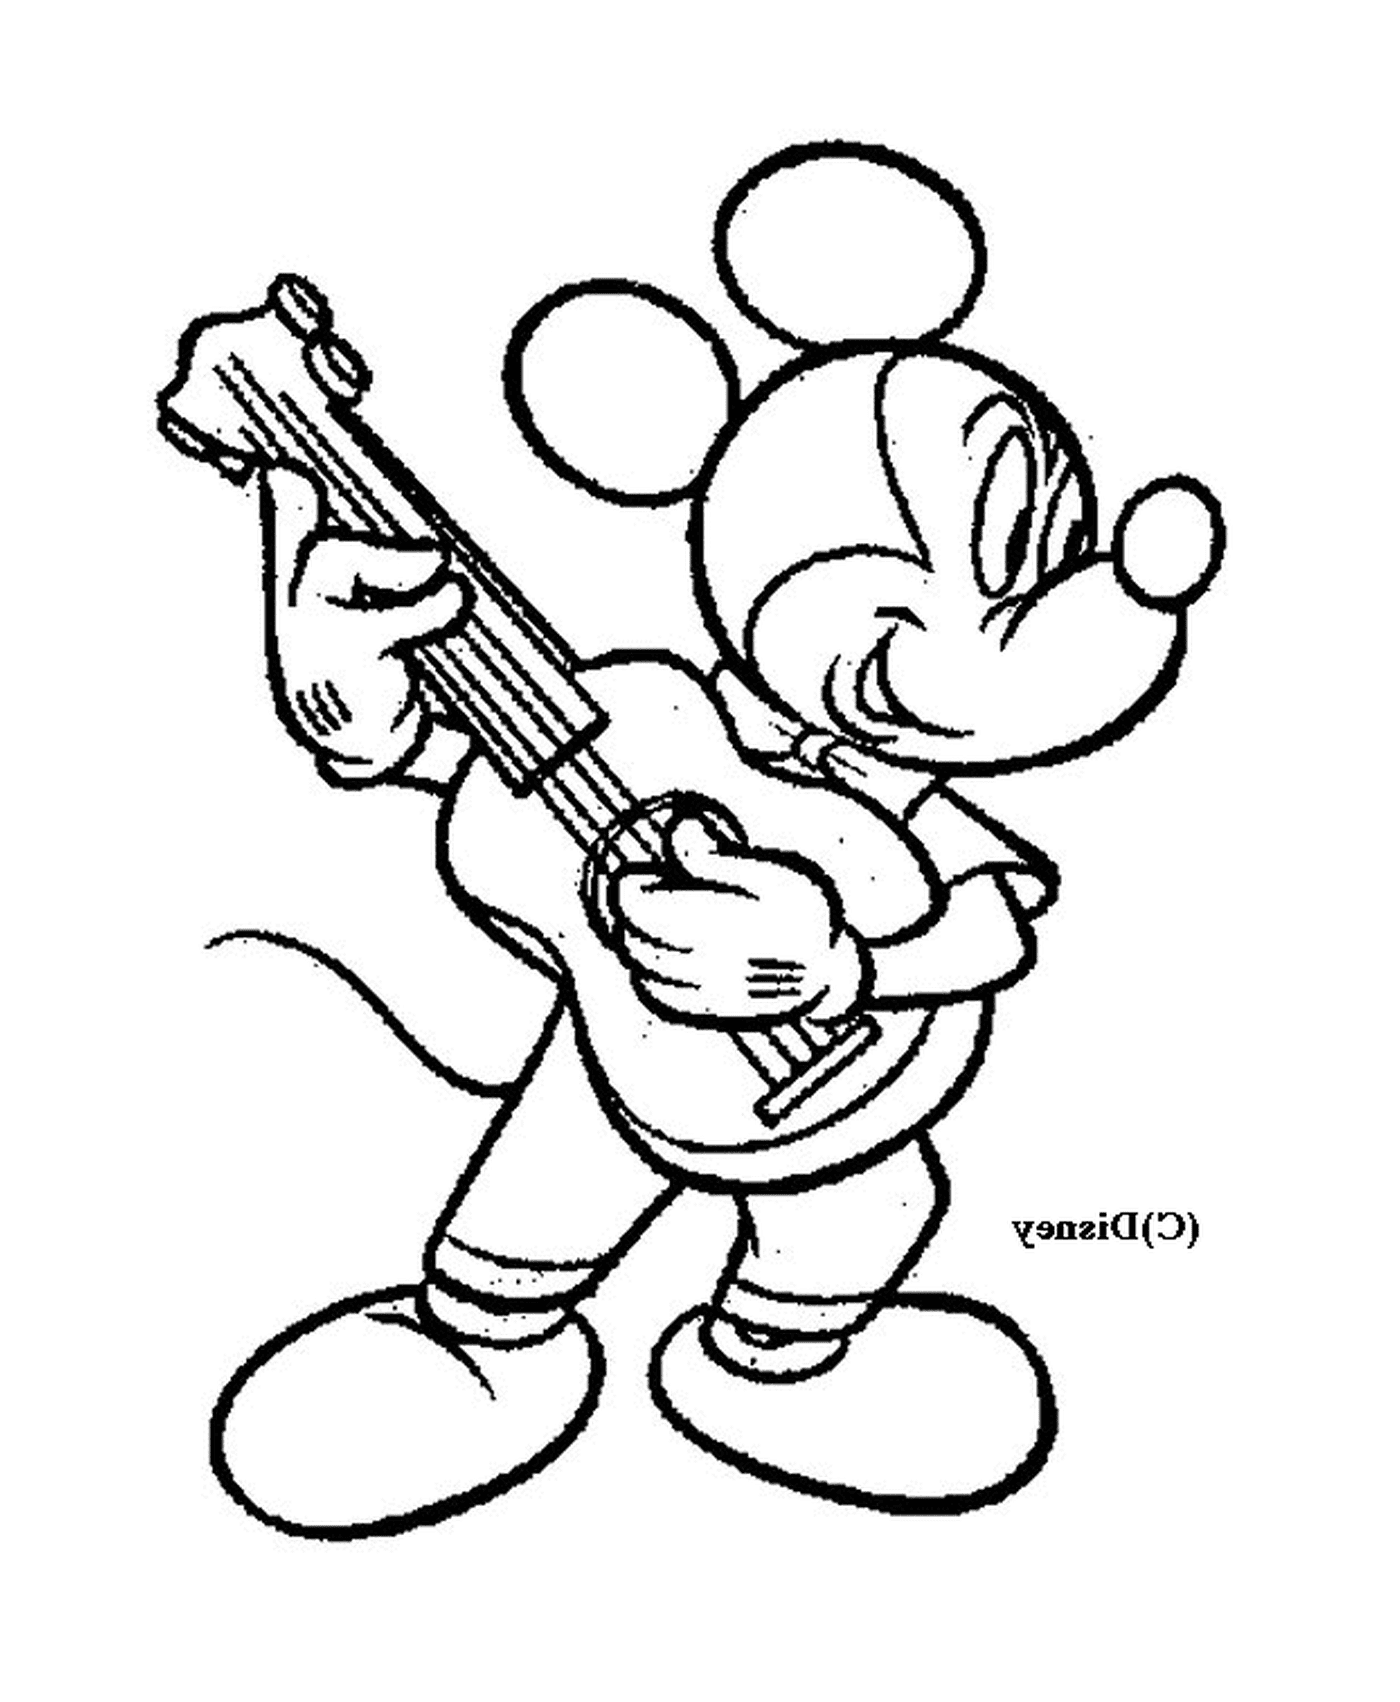  Микки играет на гитаре: Микки Маус играет на гитаре 